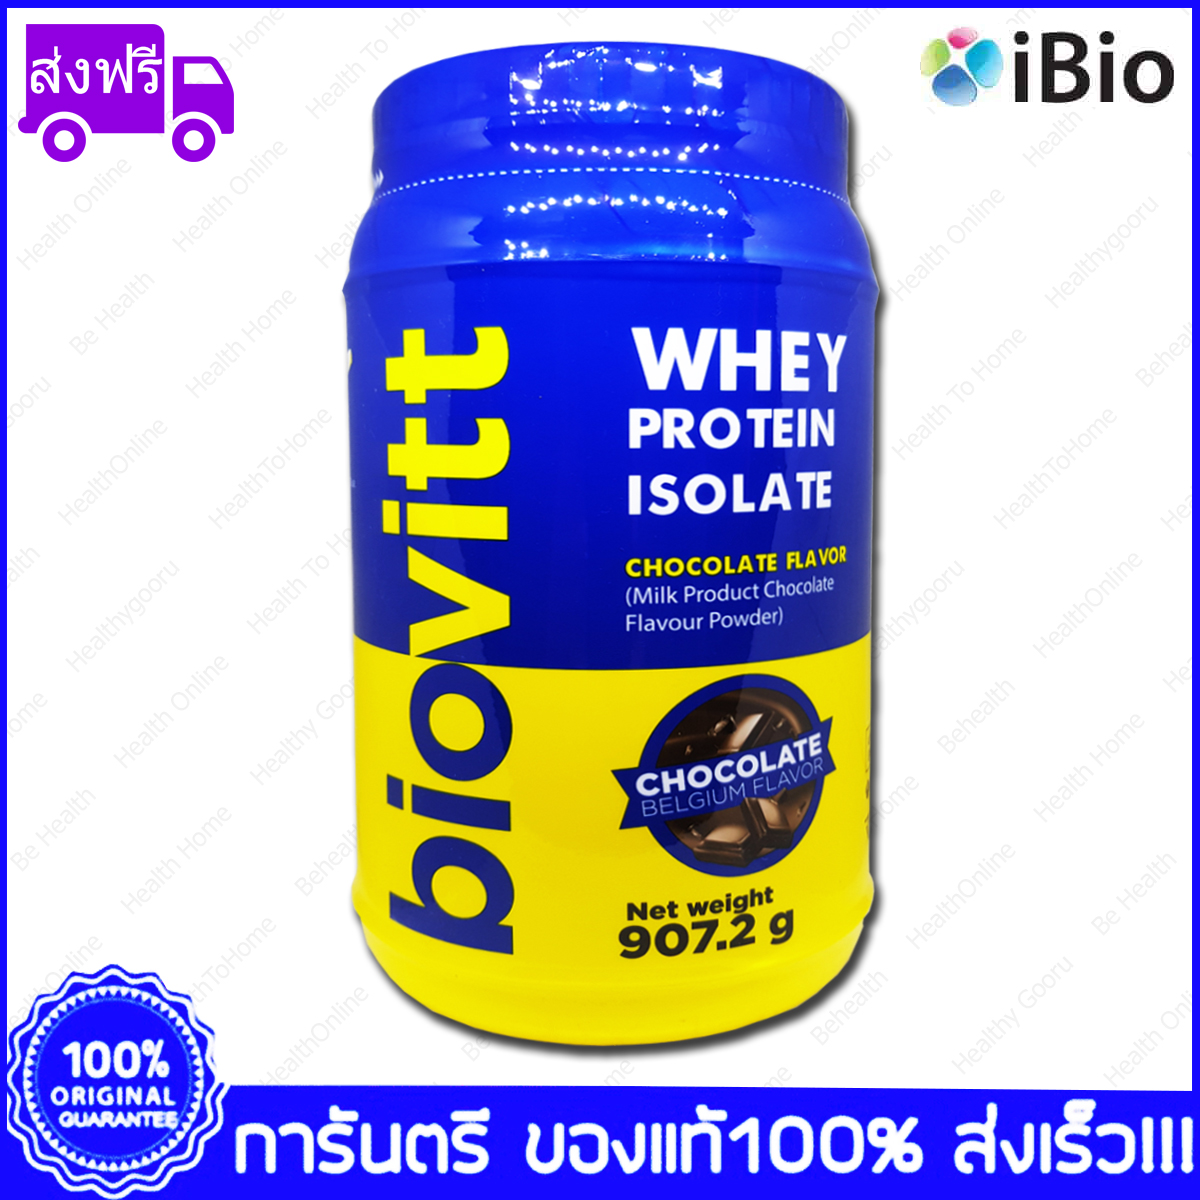 1 กระป๋อง (Bottles) Biovitt Whey Protein Isolate Chocolate Flavor เวย์โปรตีน ไอโซเลท รสช็อกโกแลตเบลเยี่ยม  907.2 g